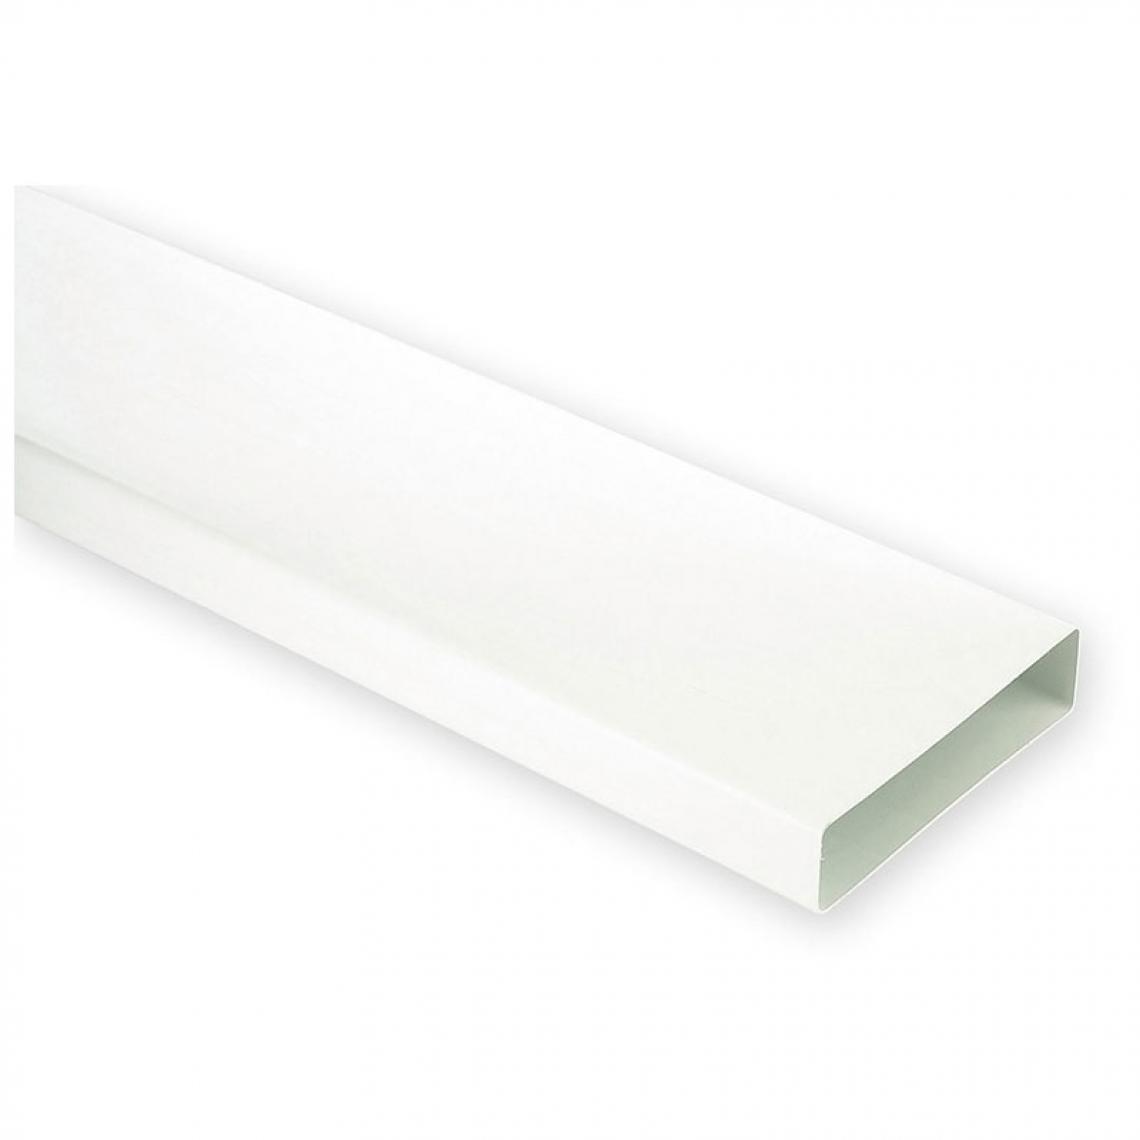 Unelvent - Tube rectangulaire en pvc - Longueur : 1500 mm - Décor : Blanc - Section : 55 x 220 mm - Matériau : PVC - UNELVENT - Grille d'aération